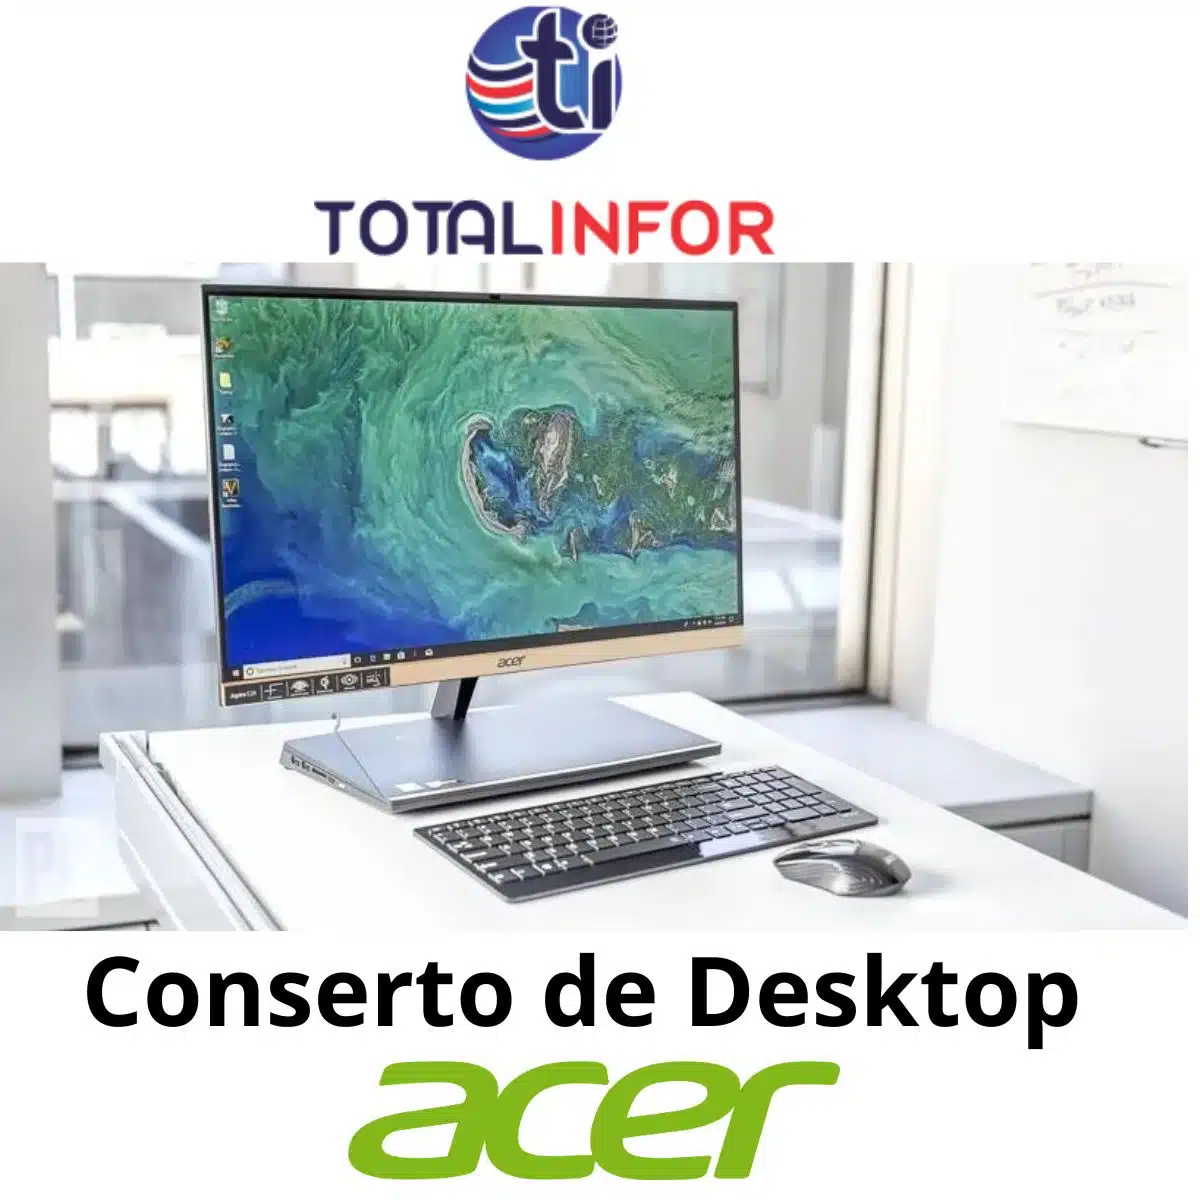 Conserto De Desktop Acer Computador Tudo Em Um Acer - Total Infor